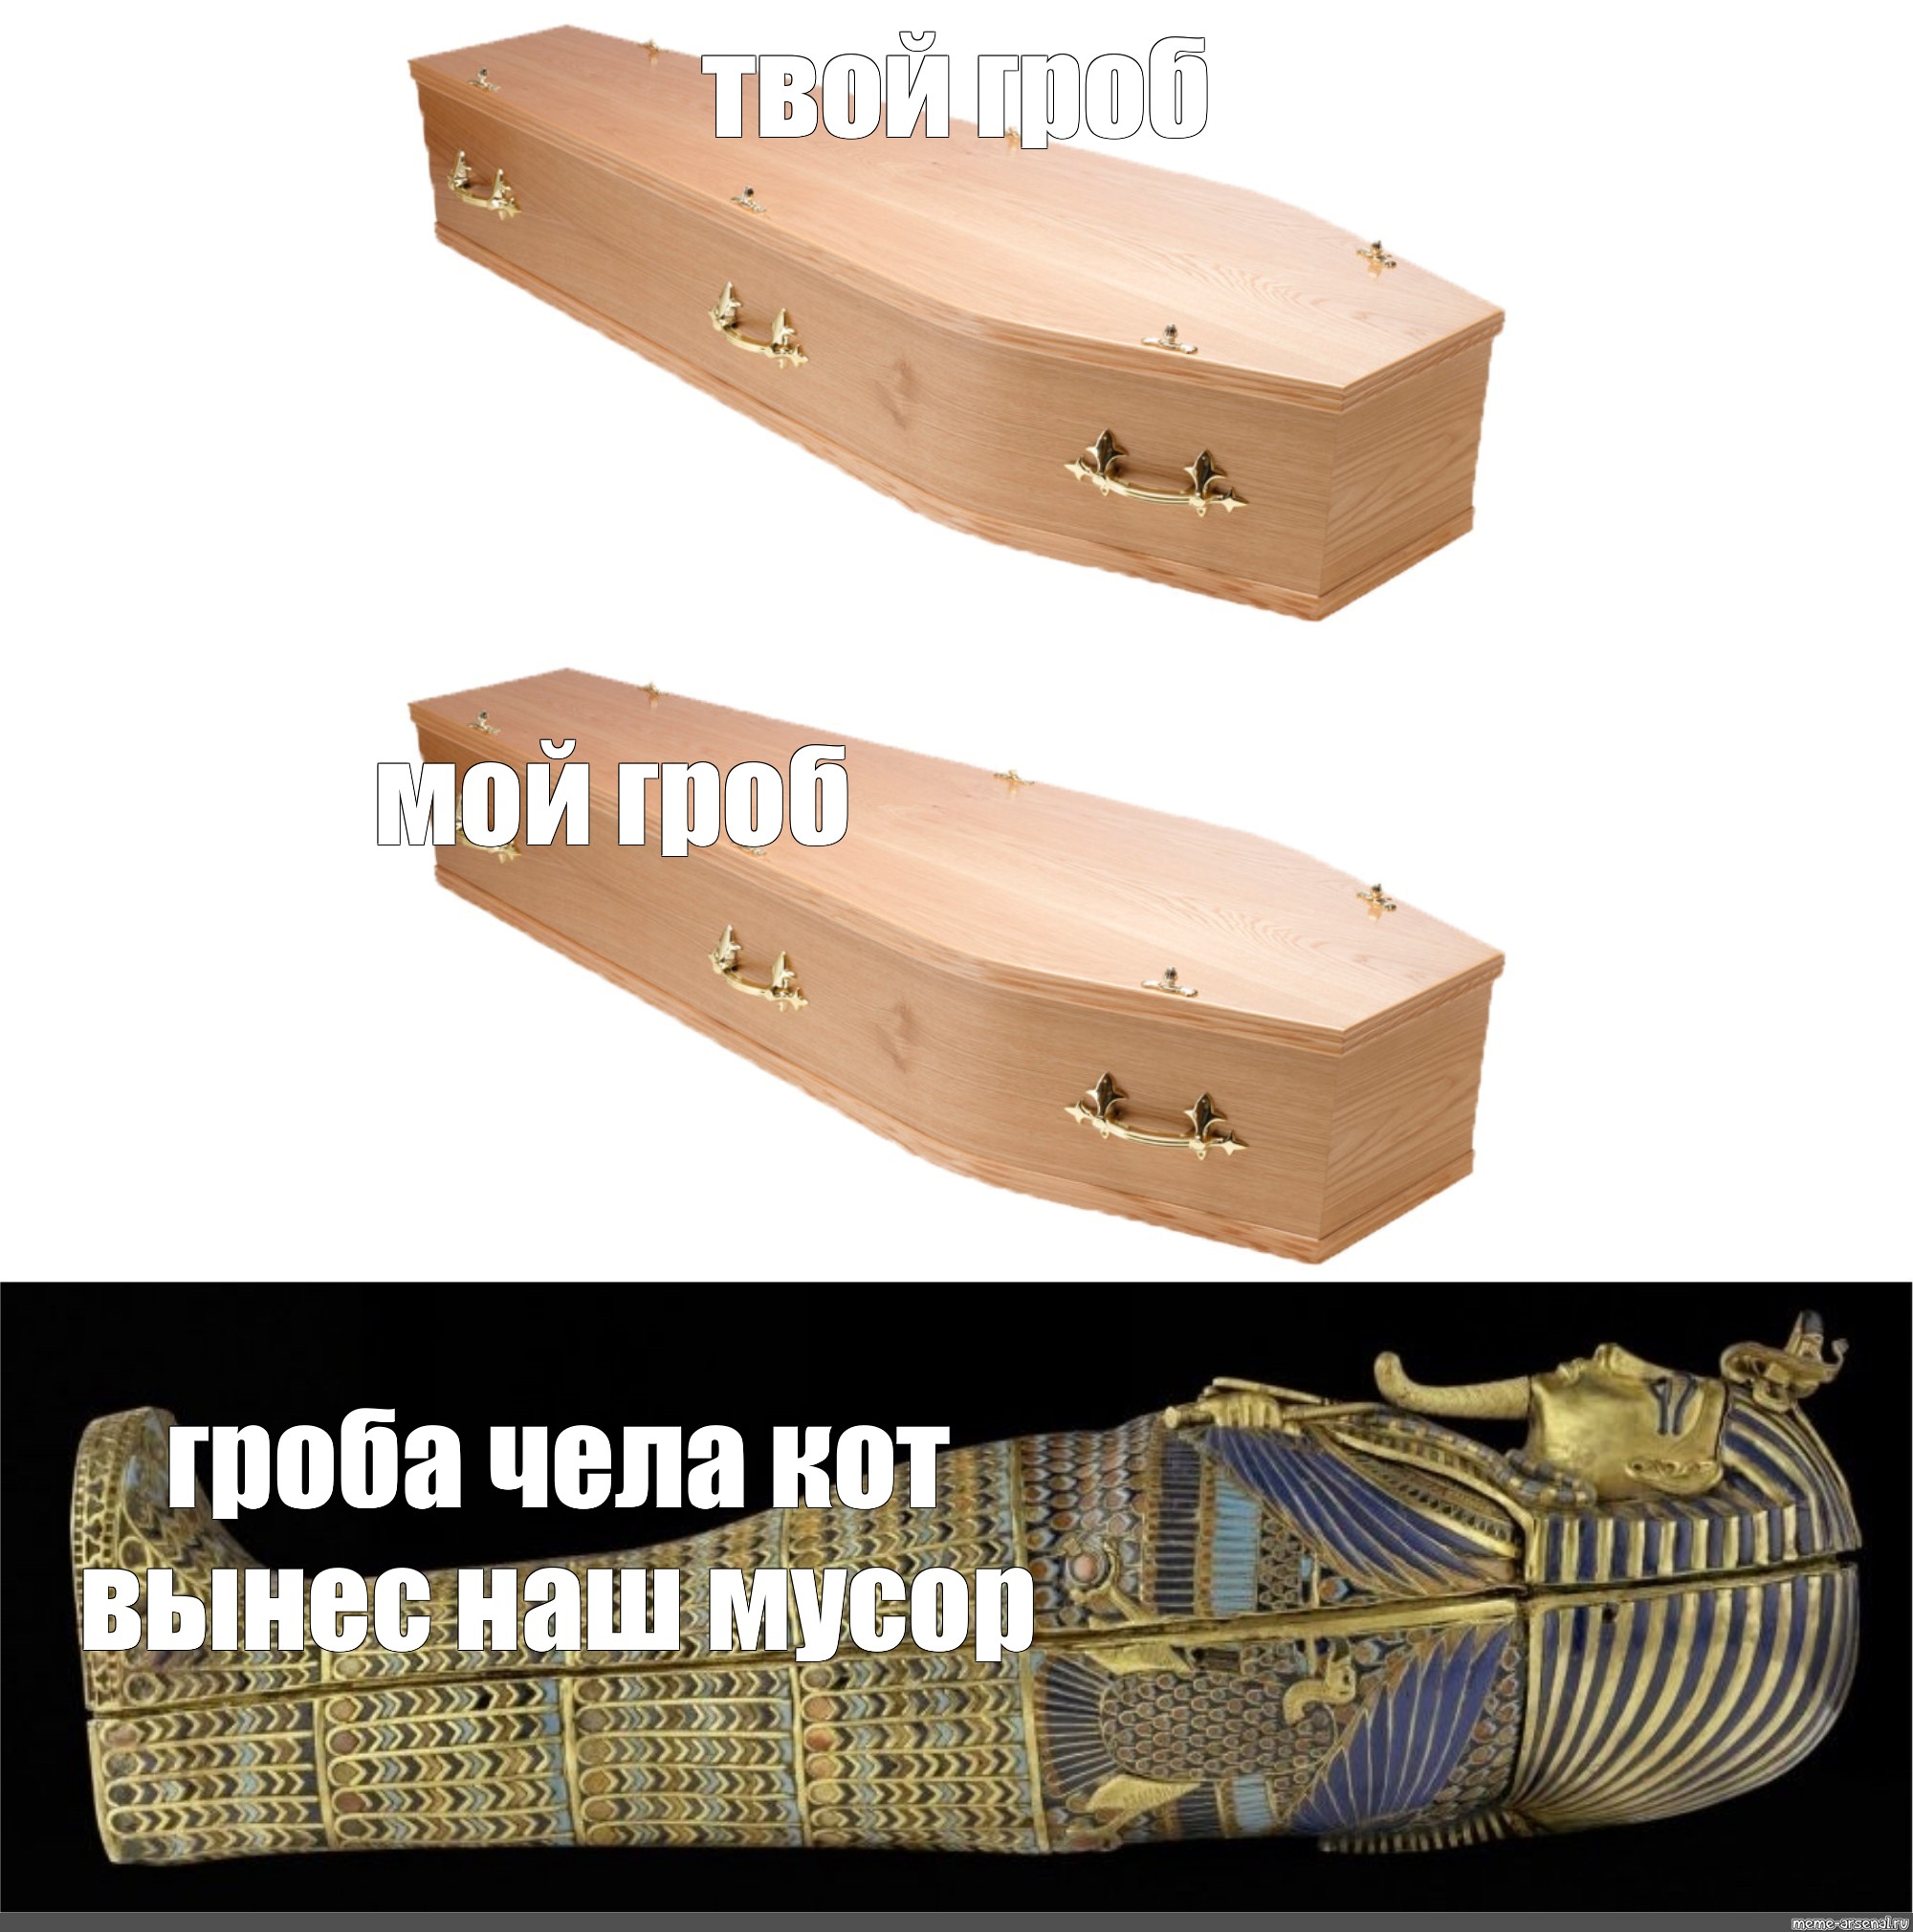 Coffin meme